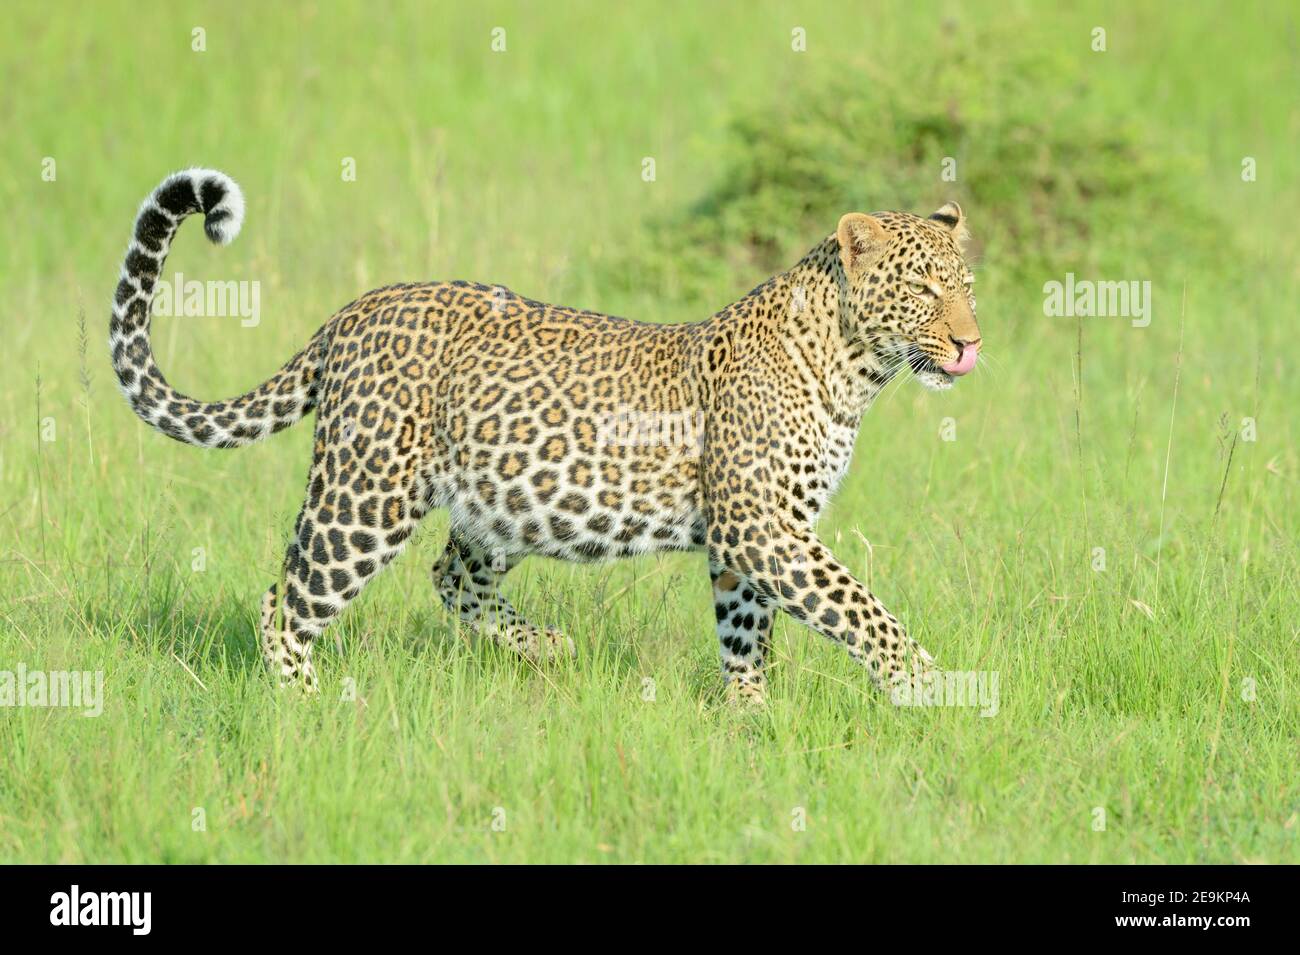 Léopard (Panthera pardus) marchant dans l'herbe, avec le ventre plein et léchant après avoir mangé des proies, réserve nationale de Masai Mara, Kenya, Afrique Banque D'Images